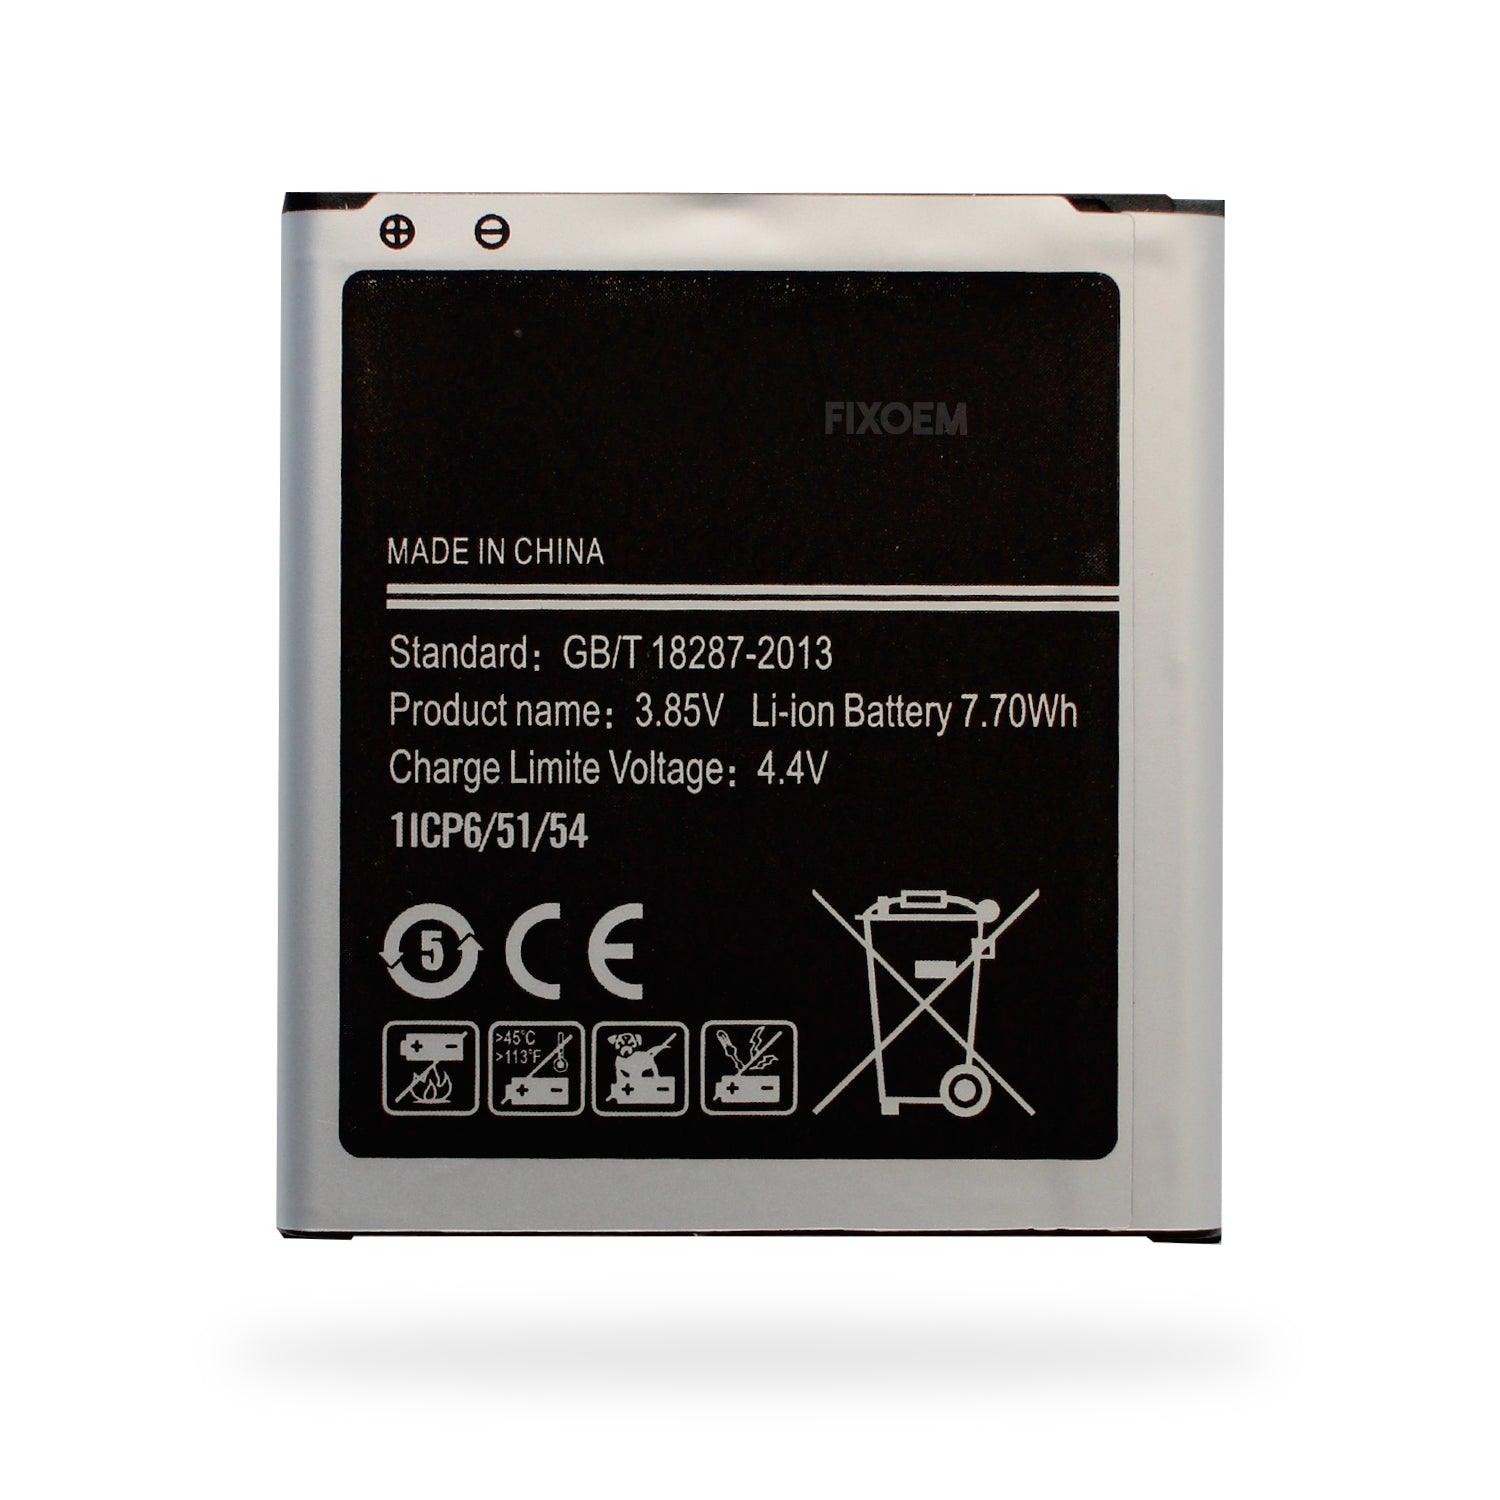 Bateria Samsung J2 Sm-J200M / Core Sm-G360 Eb-Bg360Cbc a solo $ 80.00 Refaccion y puestos celulares, refurbish y microelectronica.- FixOEM